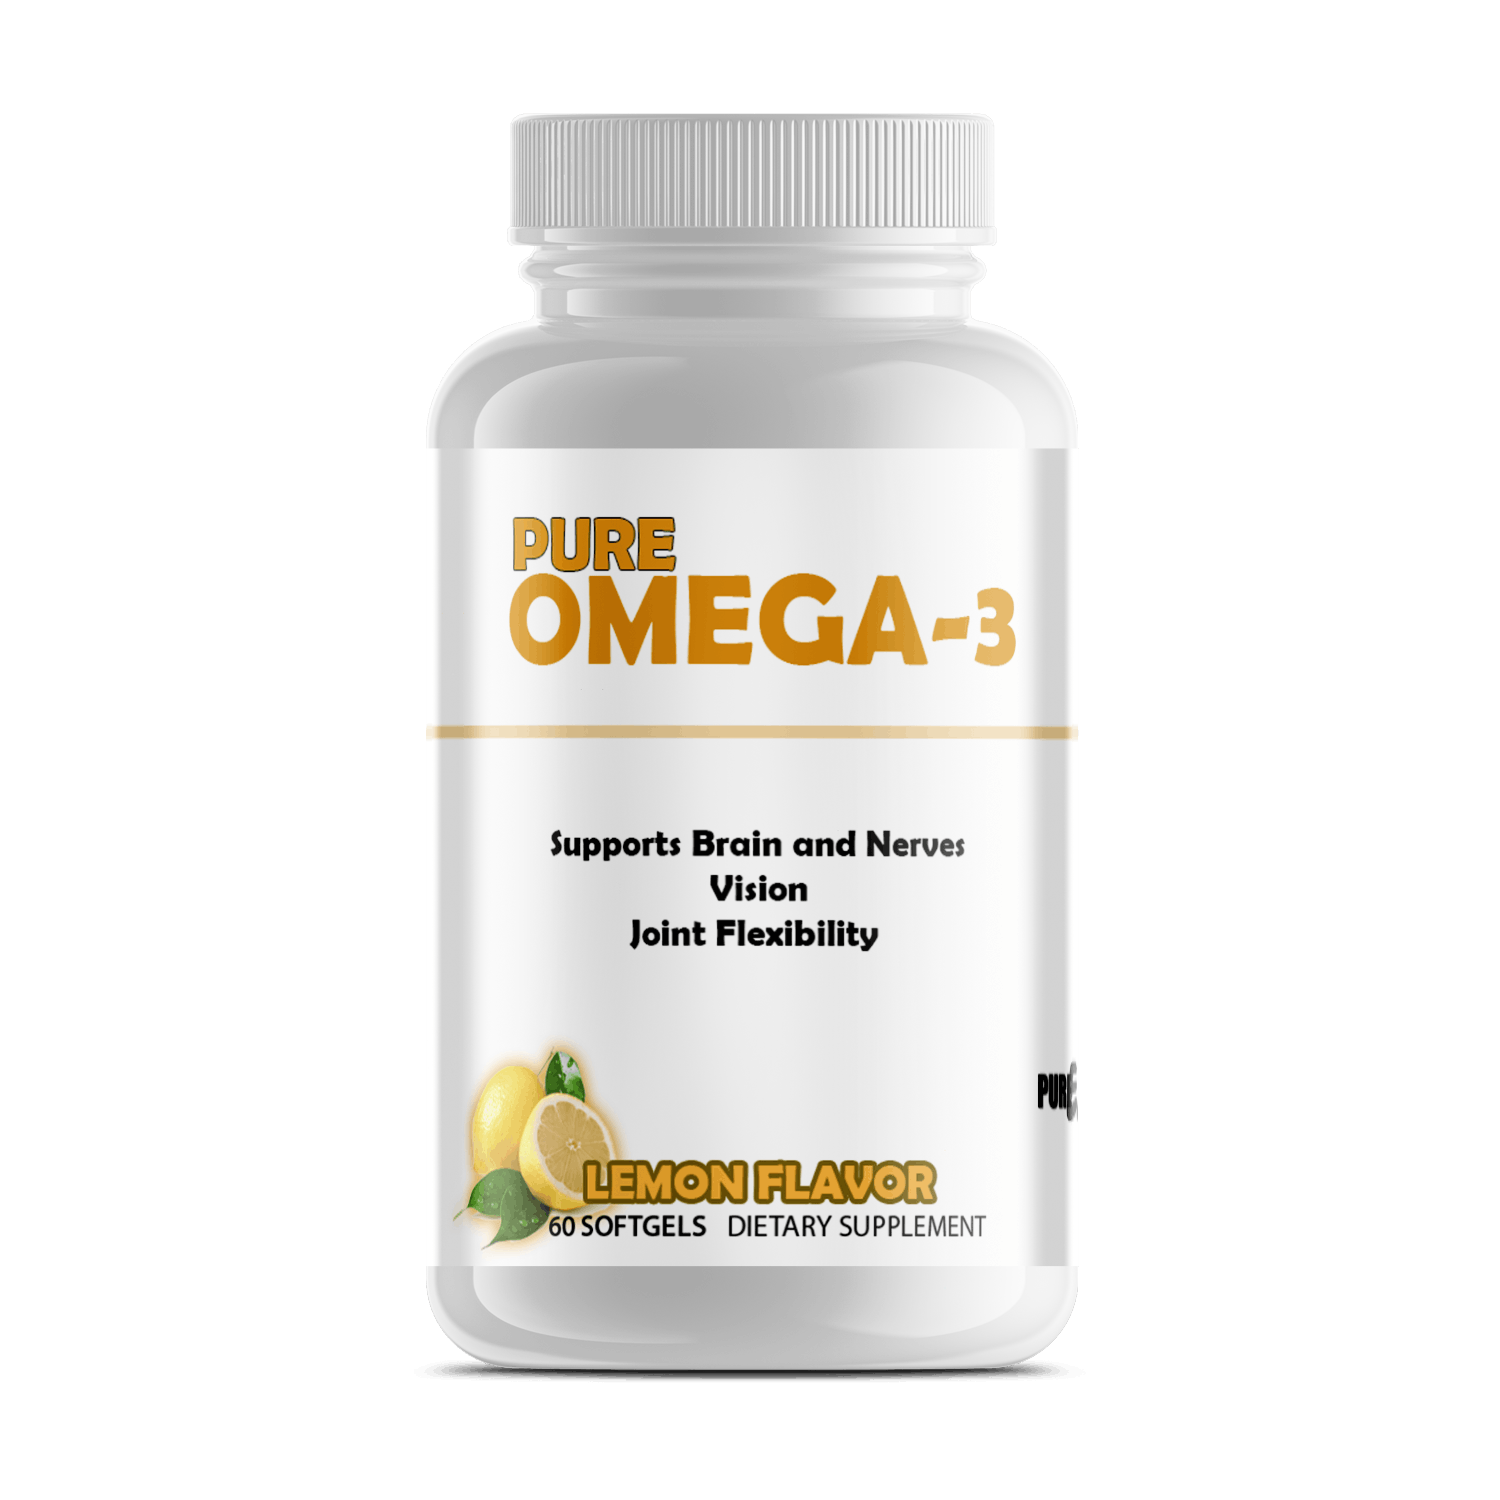 Pure Omega-3 